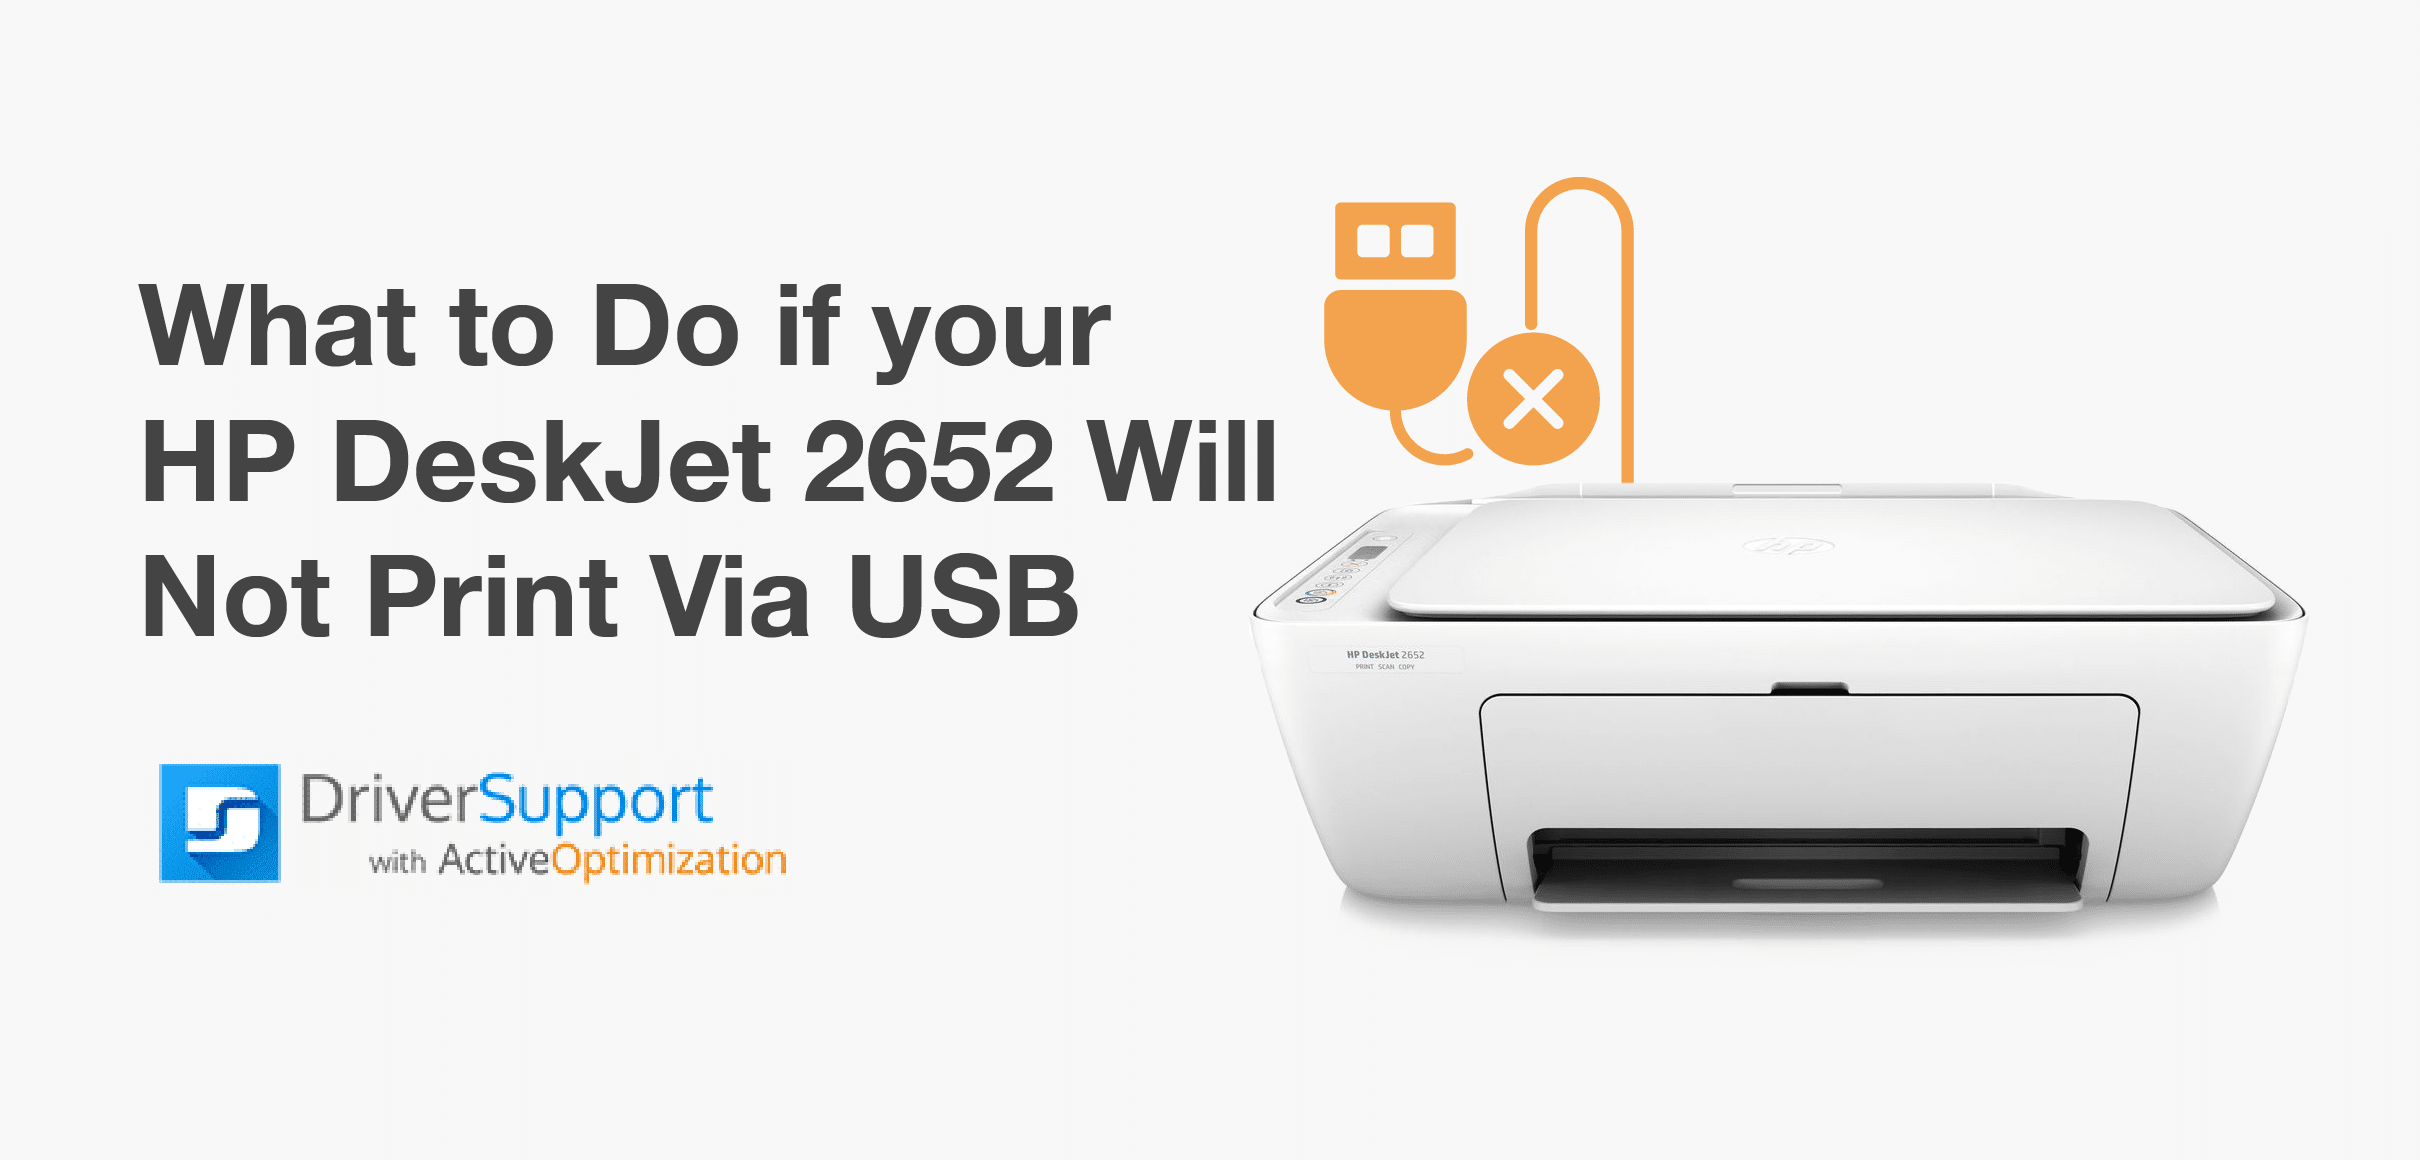 What Do if Your HP DeskJet 2652 Not Print Via USB